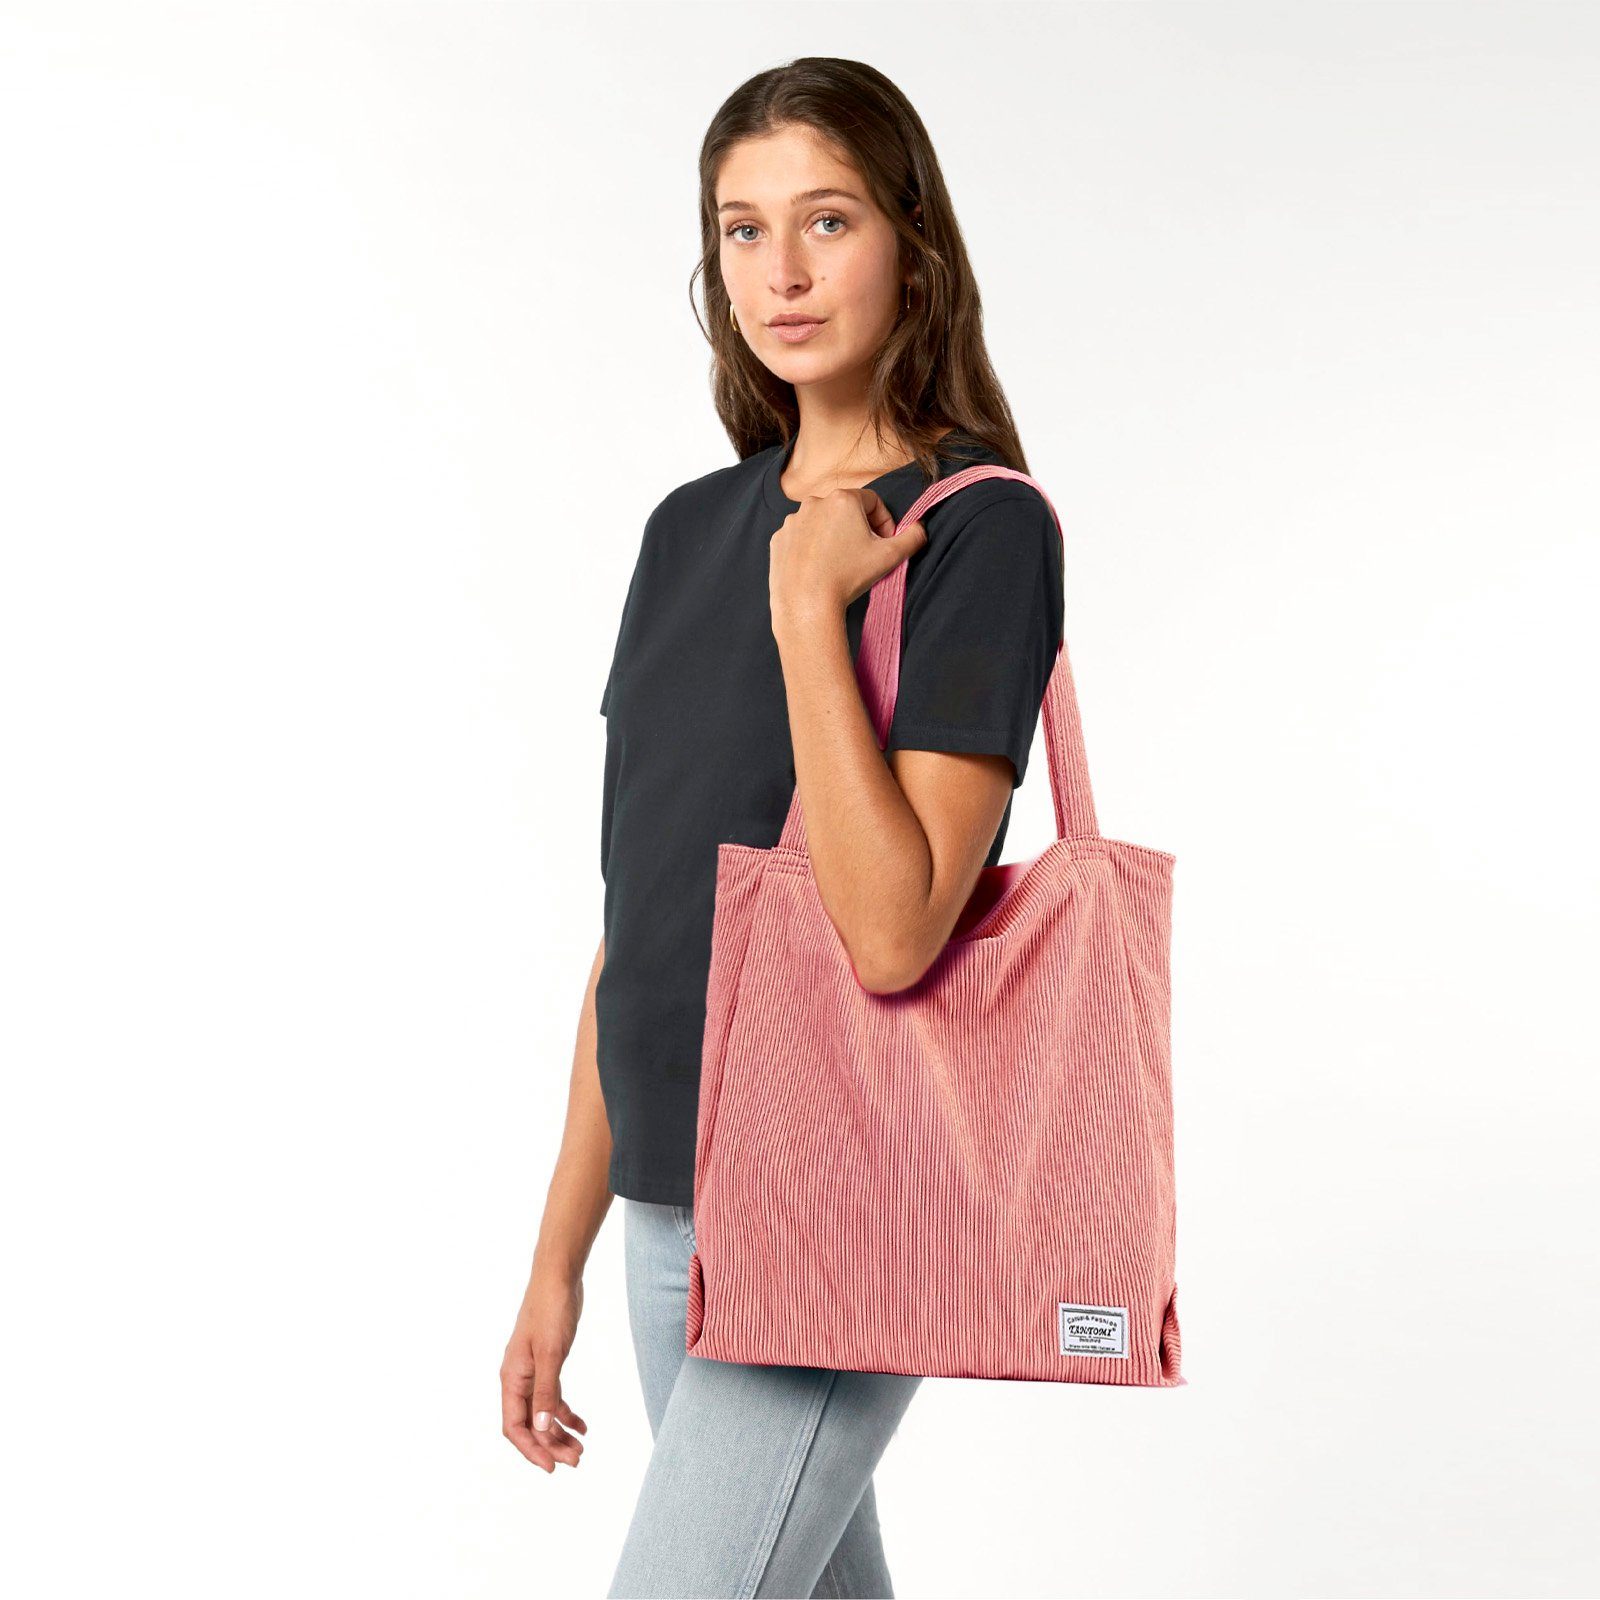 TAN.TOMI Henkeltasche Handtasche, Damenhandtasche, Altrosa Reißverschluss-Einkaufstasche Cordtasche mit Damen, Tasche